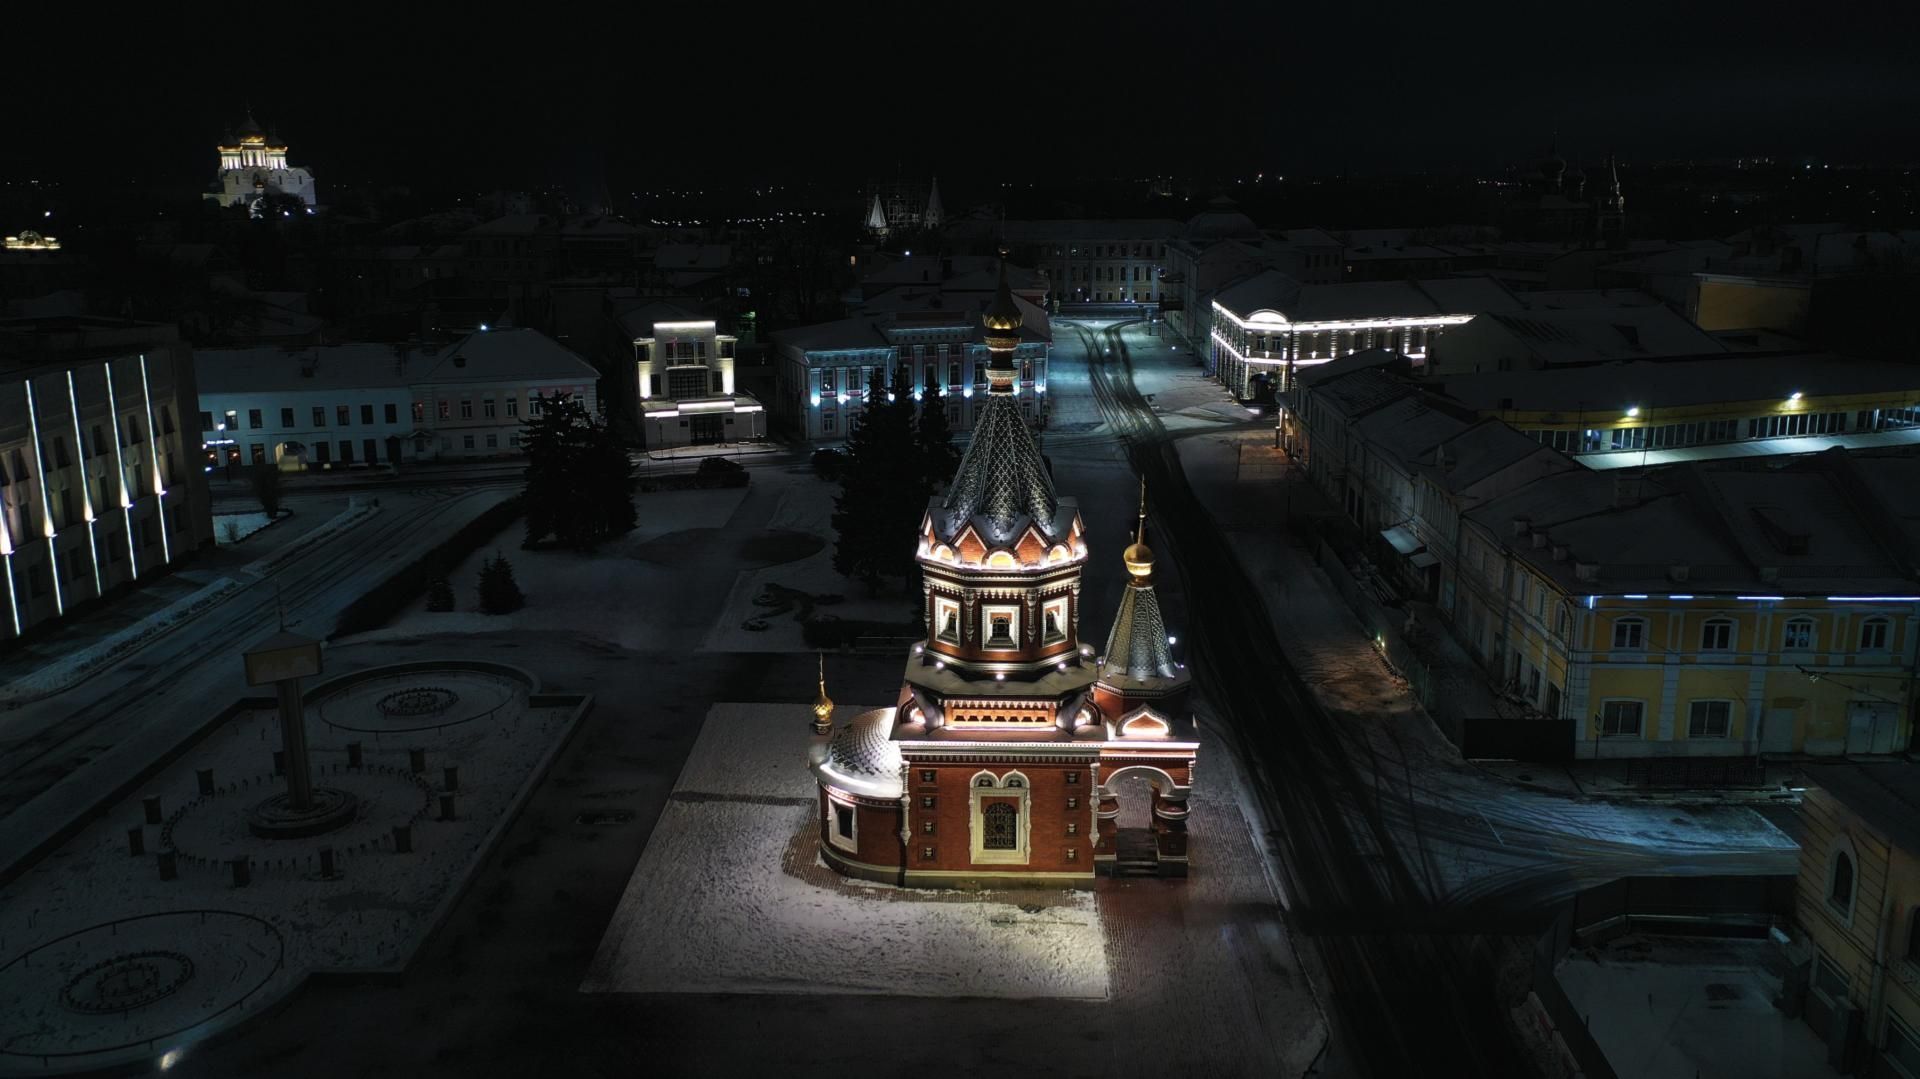 Часовня Александра Невского в Ярославле